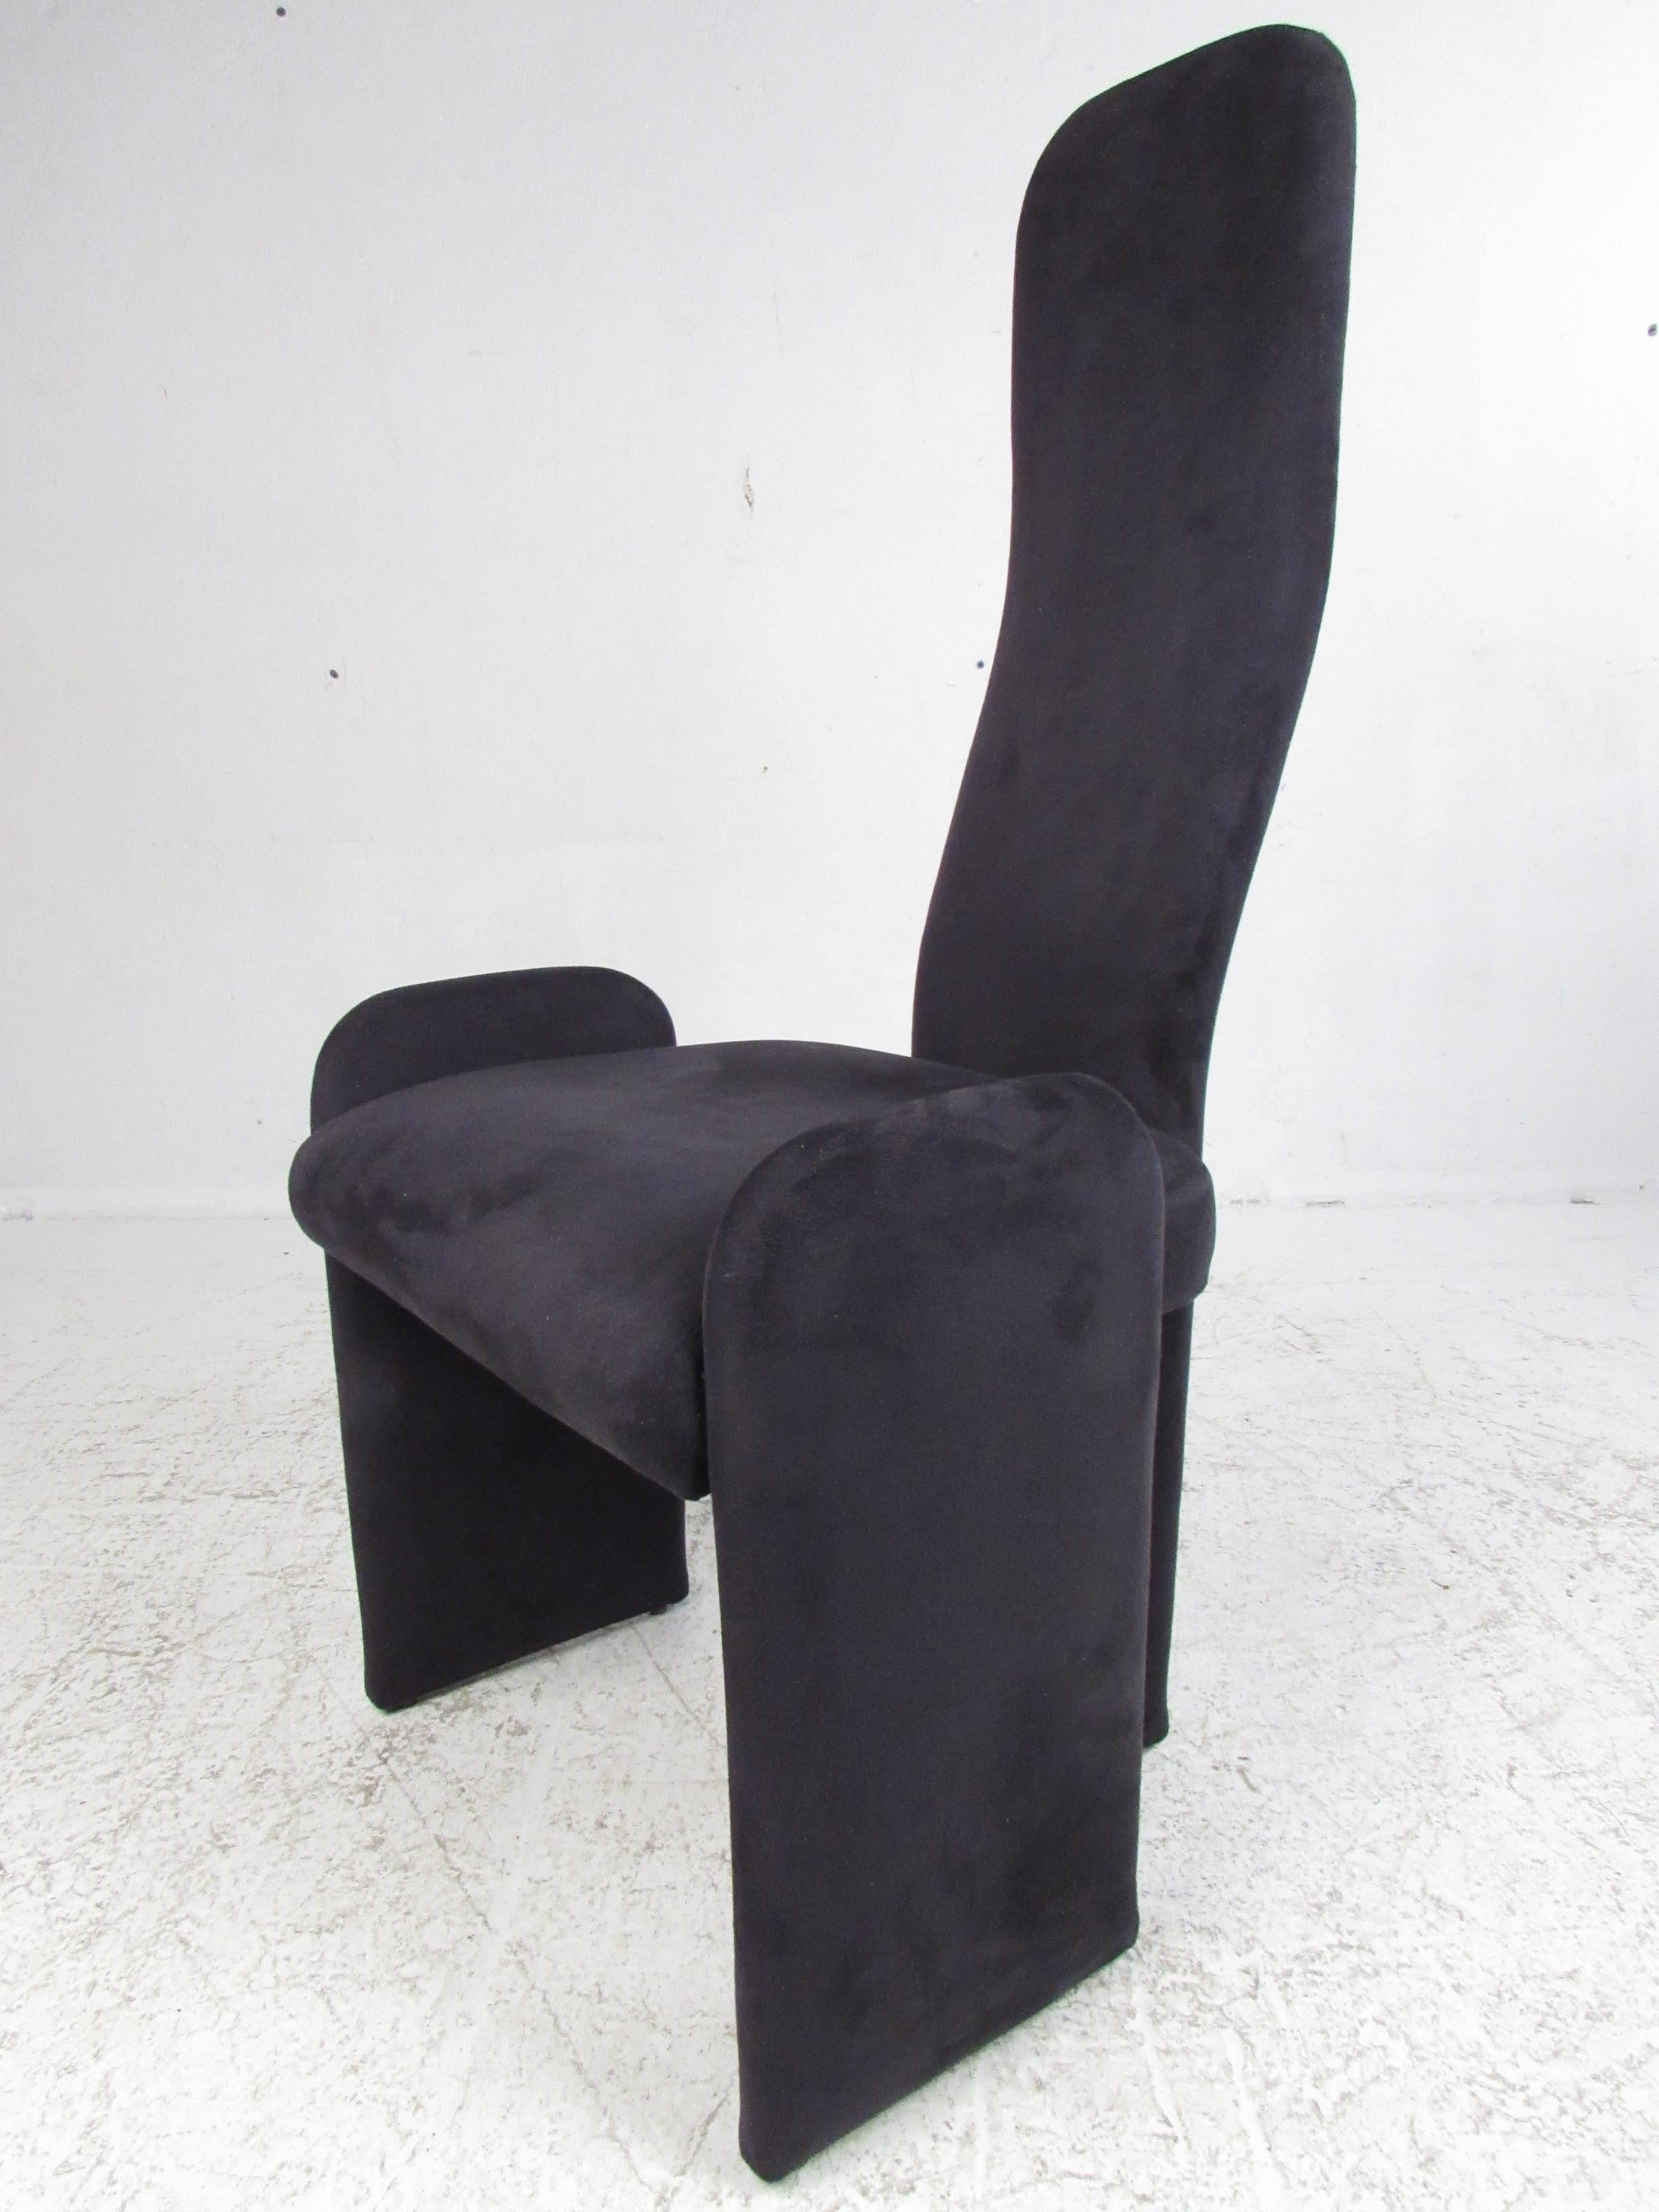 Chaises de salle à manger sculpturales de Trendline Furniture à New York. Entièrement couverts avec des dossiers hauts.
Veuillez confirmer le lieu NY ou NJ.